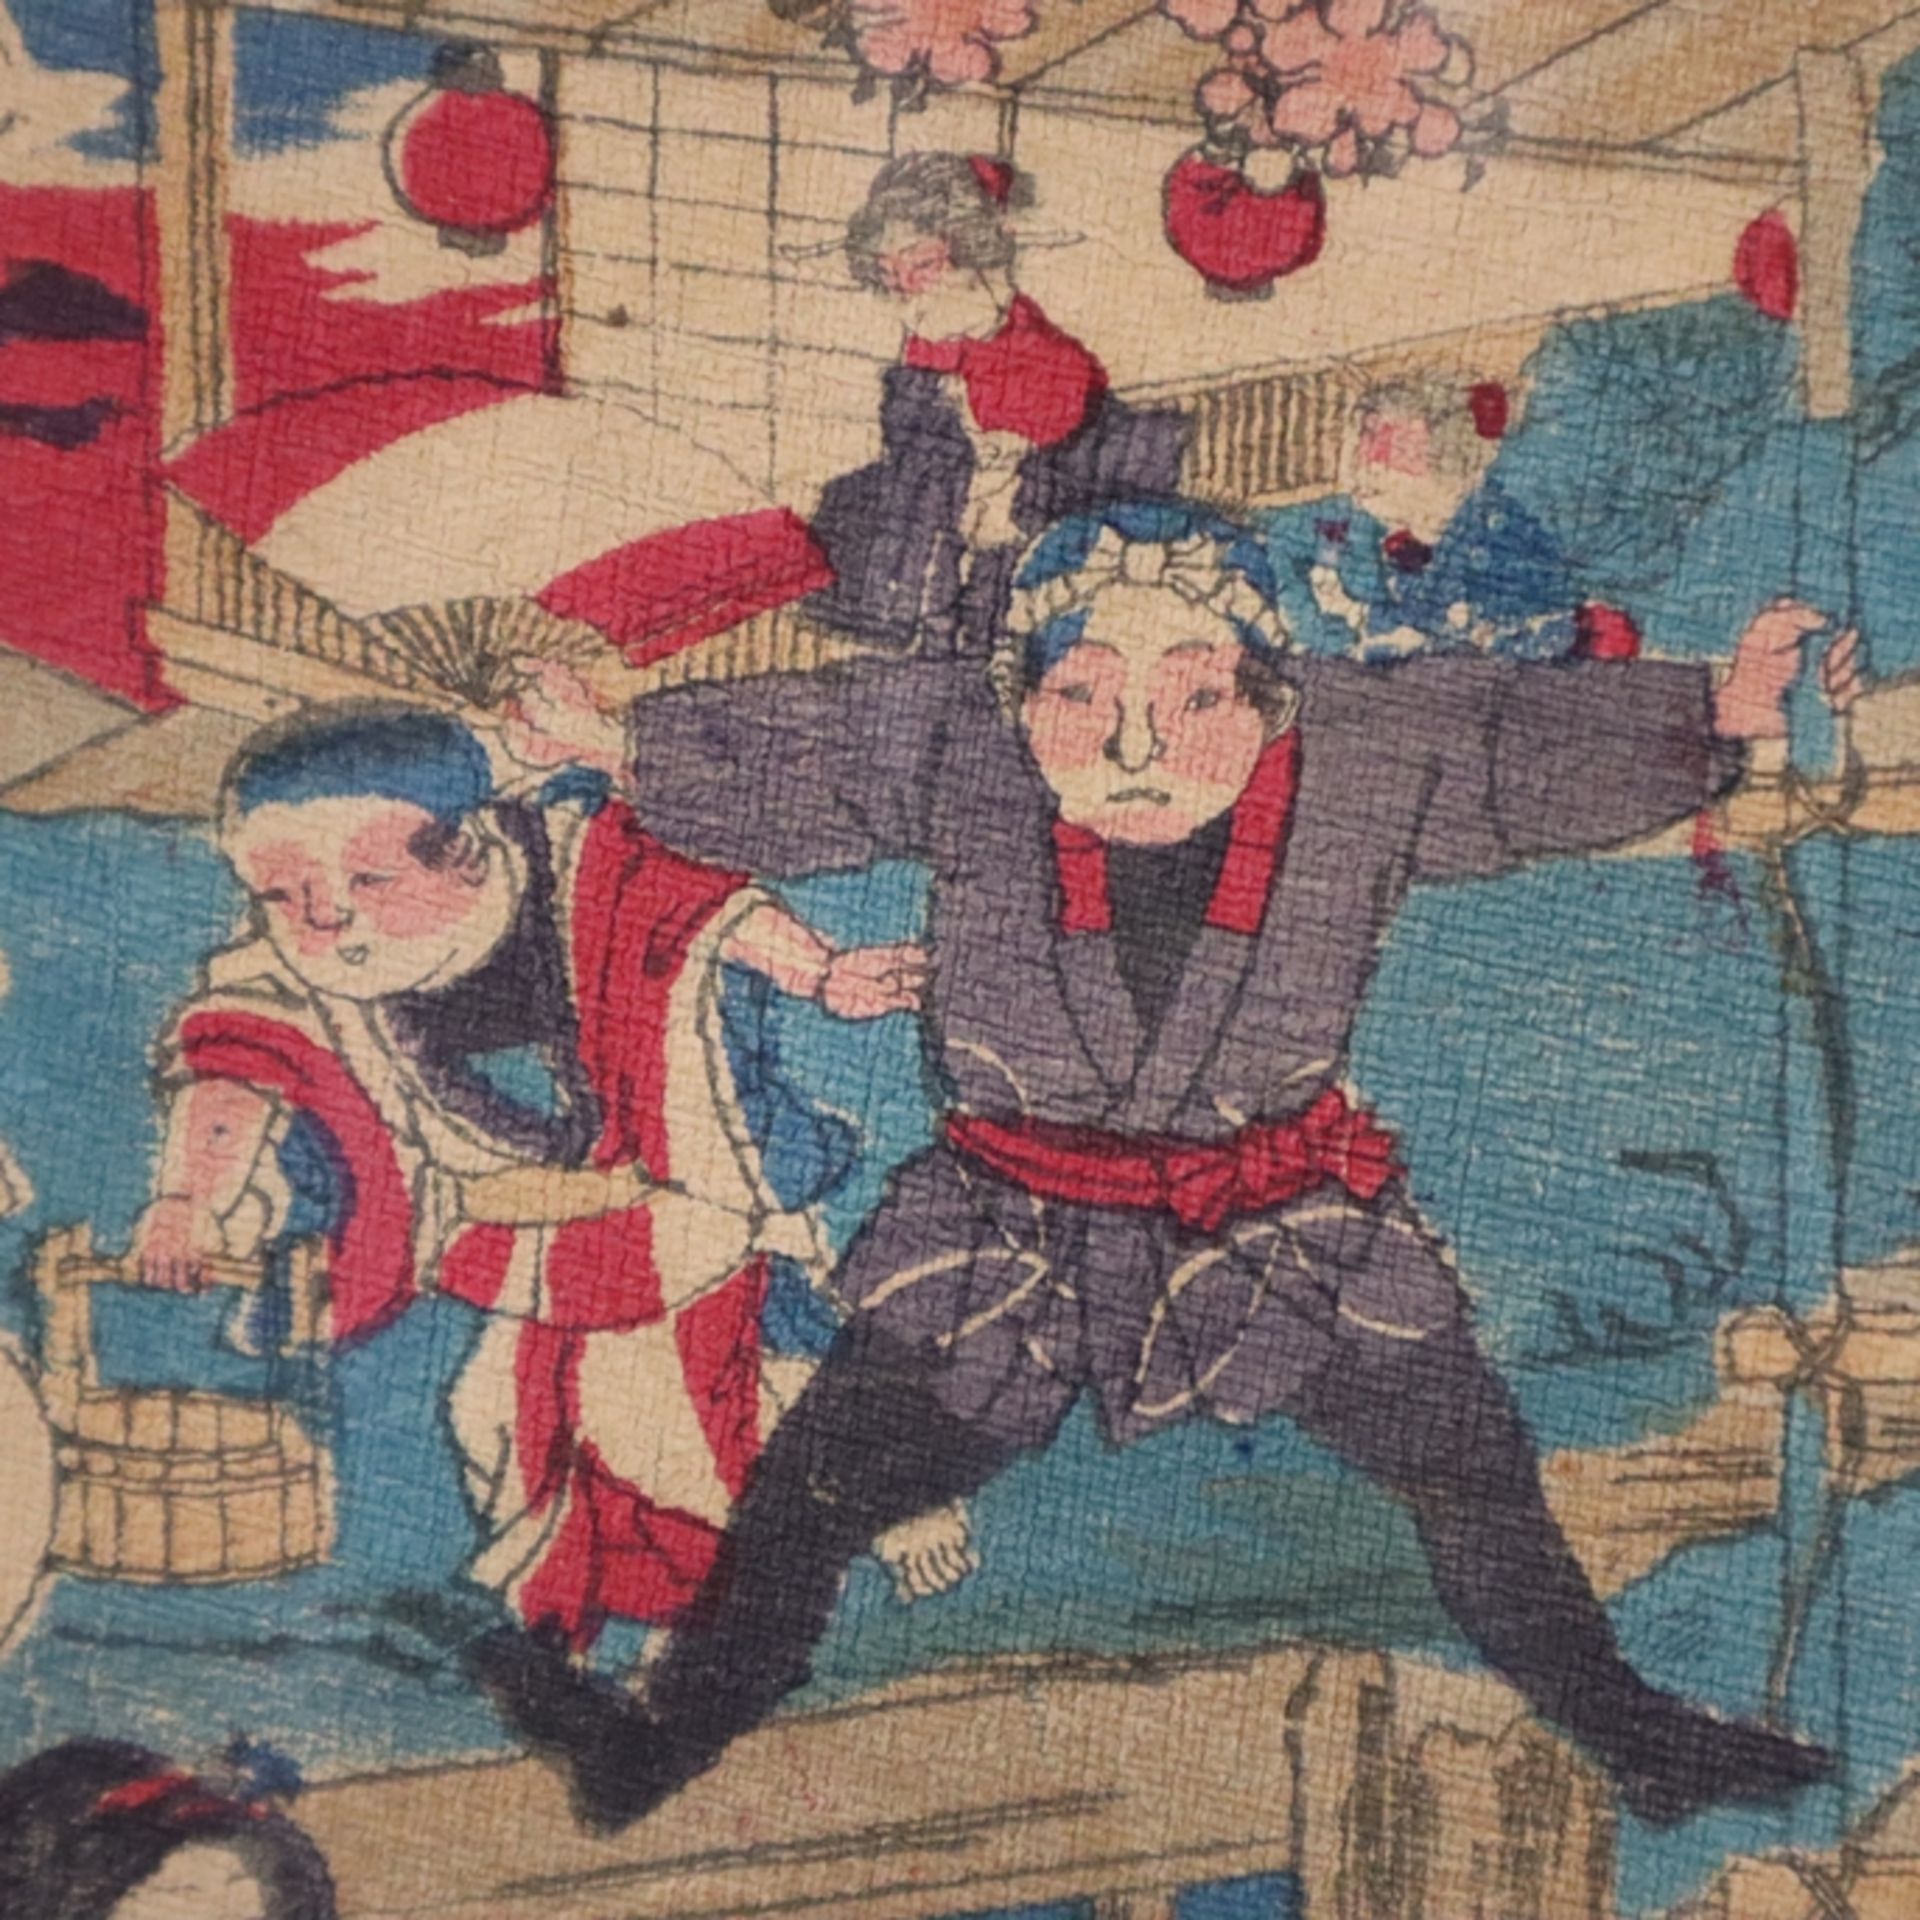 Japanischer Farbholzschnitt 19.Jh. - Akrobaten, signiert, ca. 28x20cm, Alterssp - Bild 3 aus 7